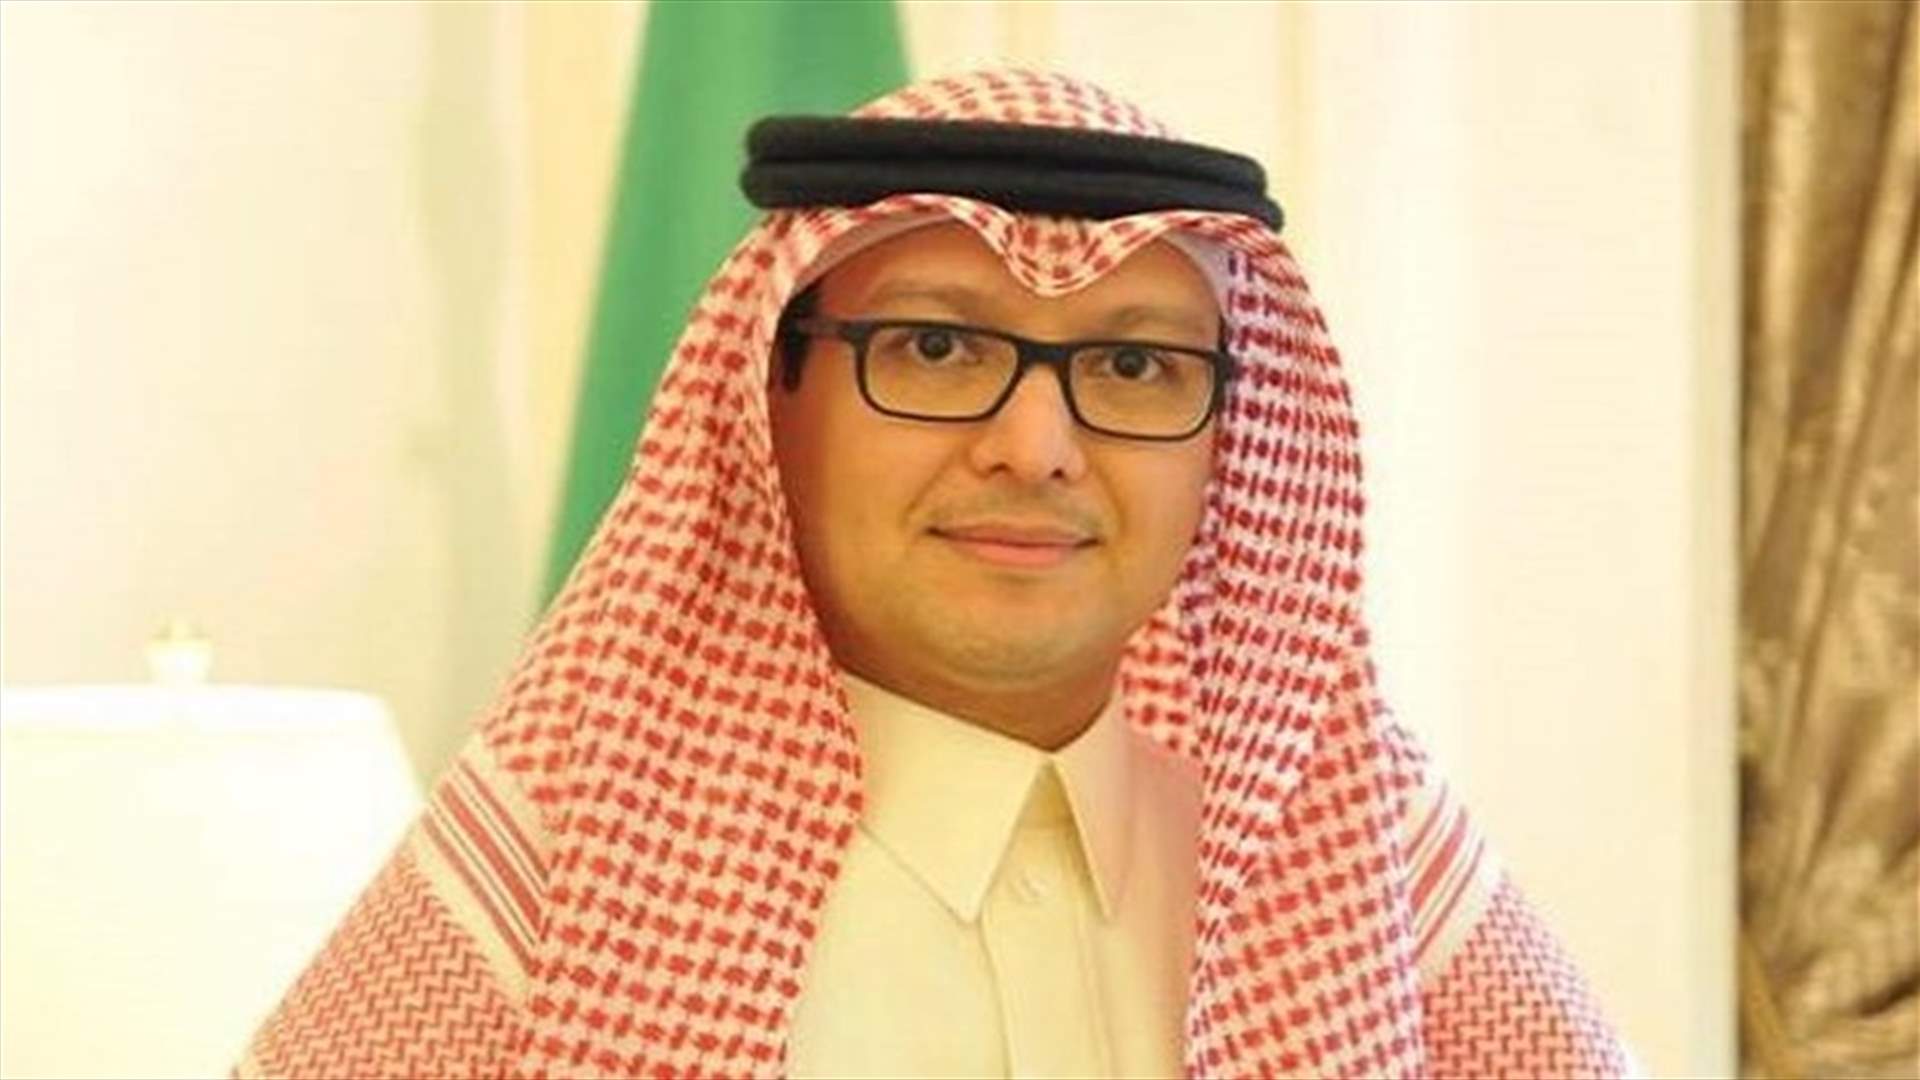 السفير السعودي يزور الراعي قبل ظهر اليوم في بكركي (الجمهورية)